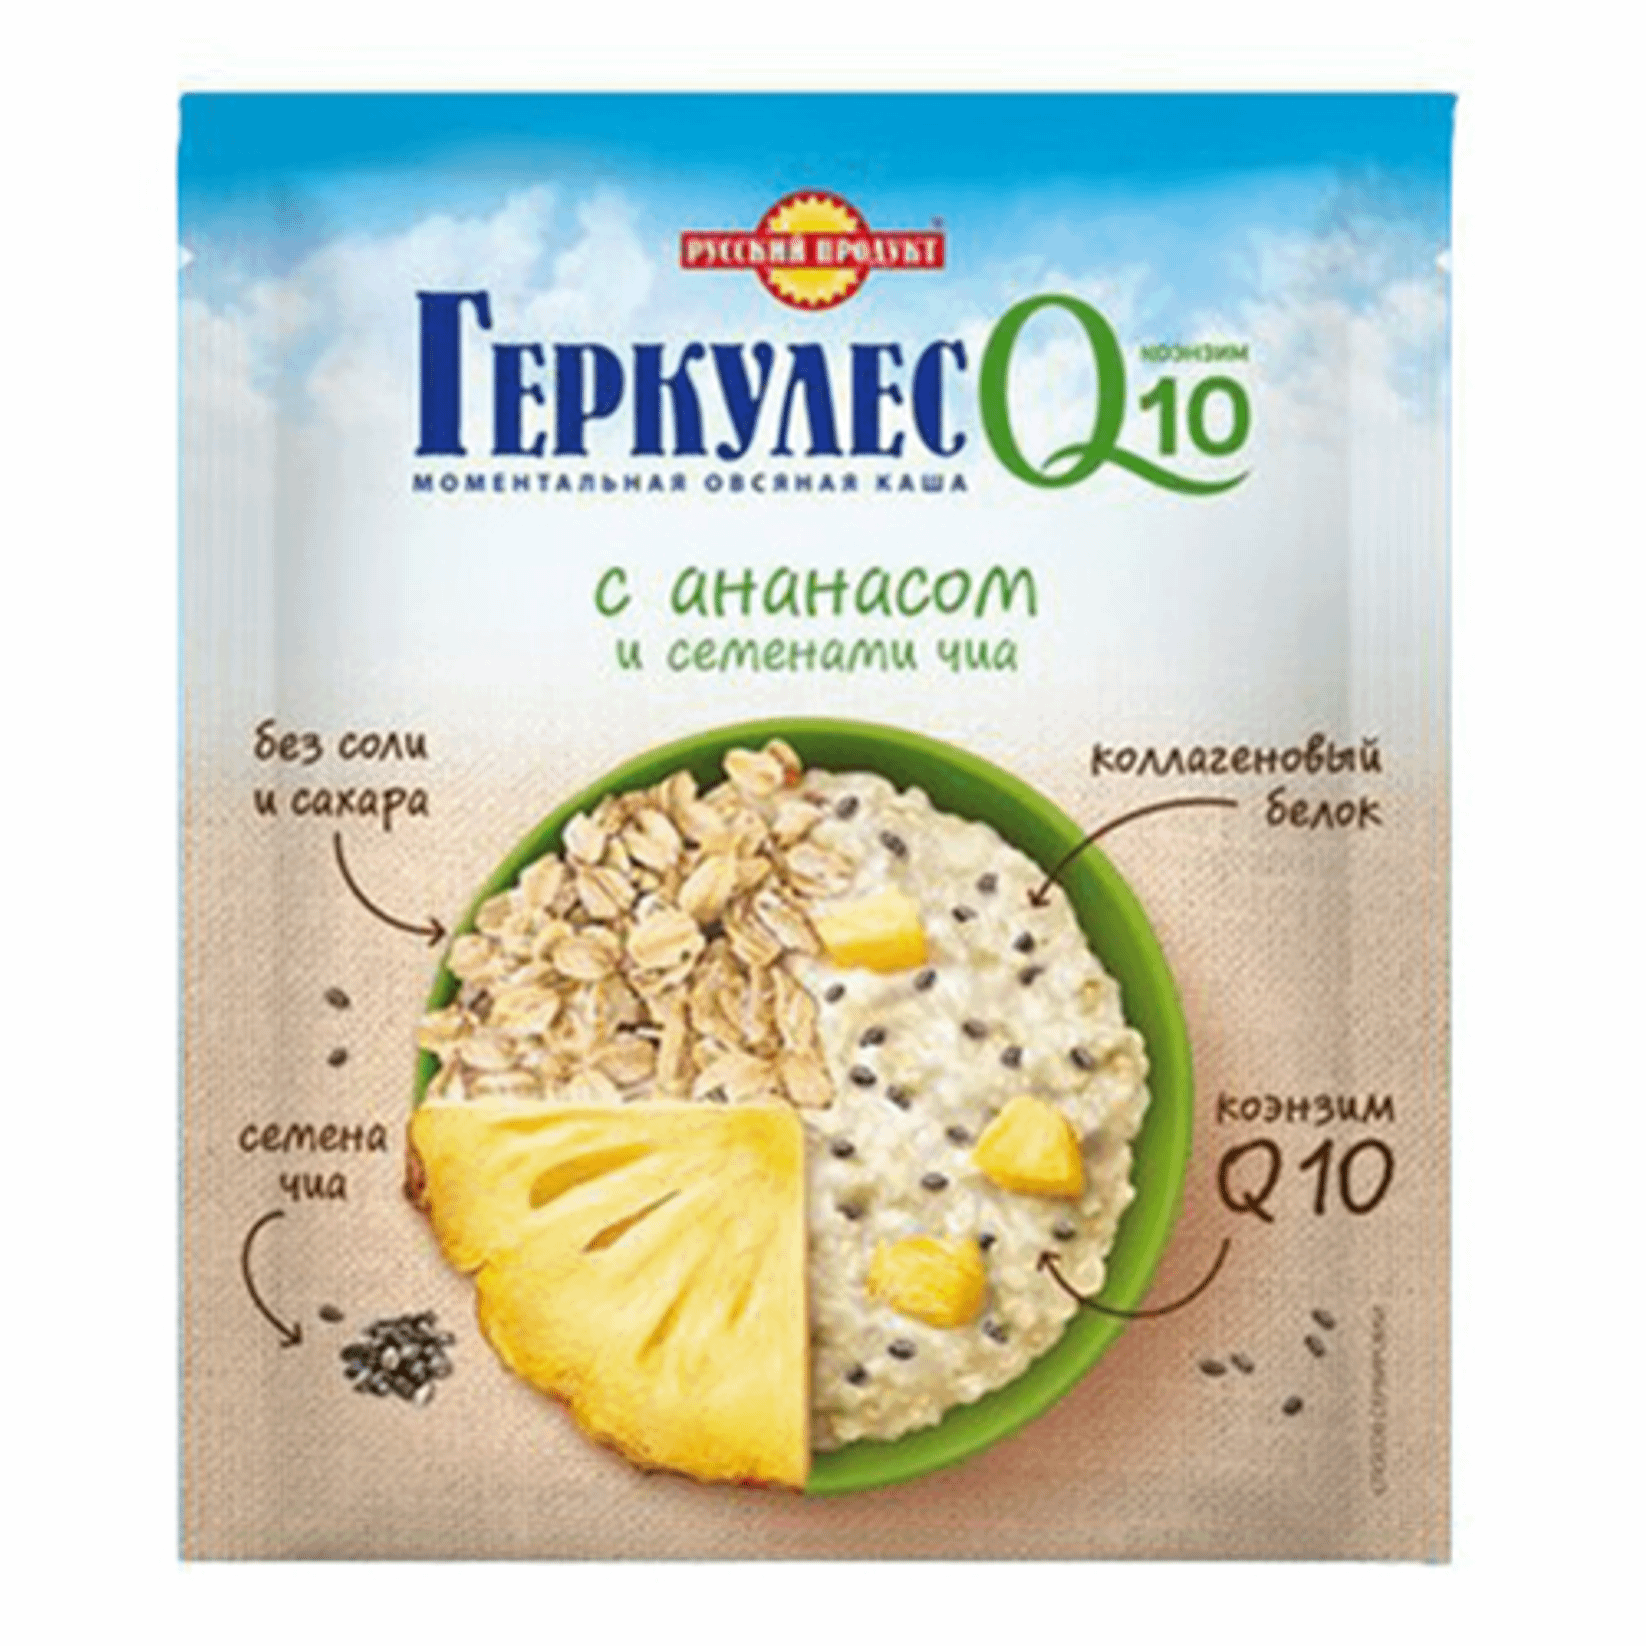 Геркулес q10 русский продукт